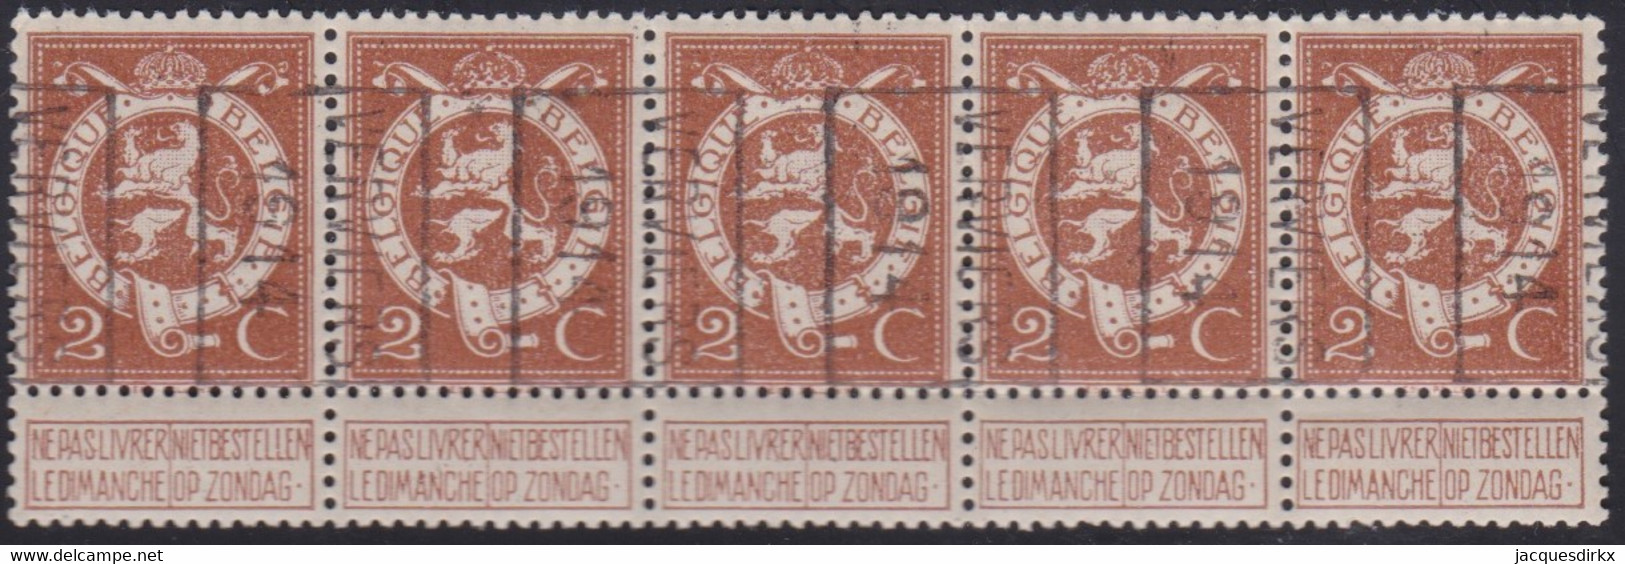 Belgie   .  OBP   .   Strook 5 Zegels 2381   (2 Paren)      .     **   .     Postfris  . / .   Neuf SANS Charniére - Roulettes 1910-19